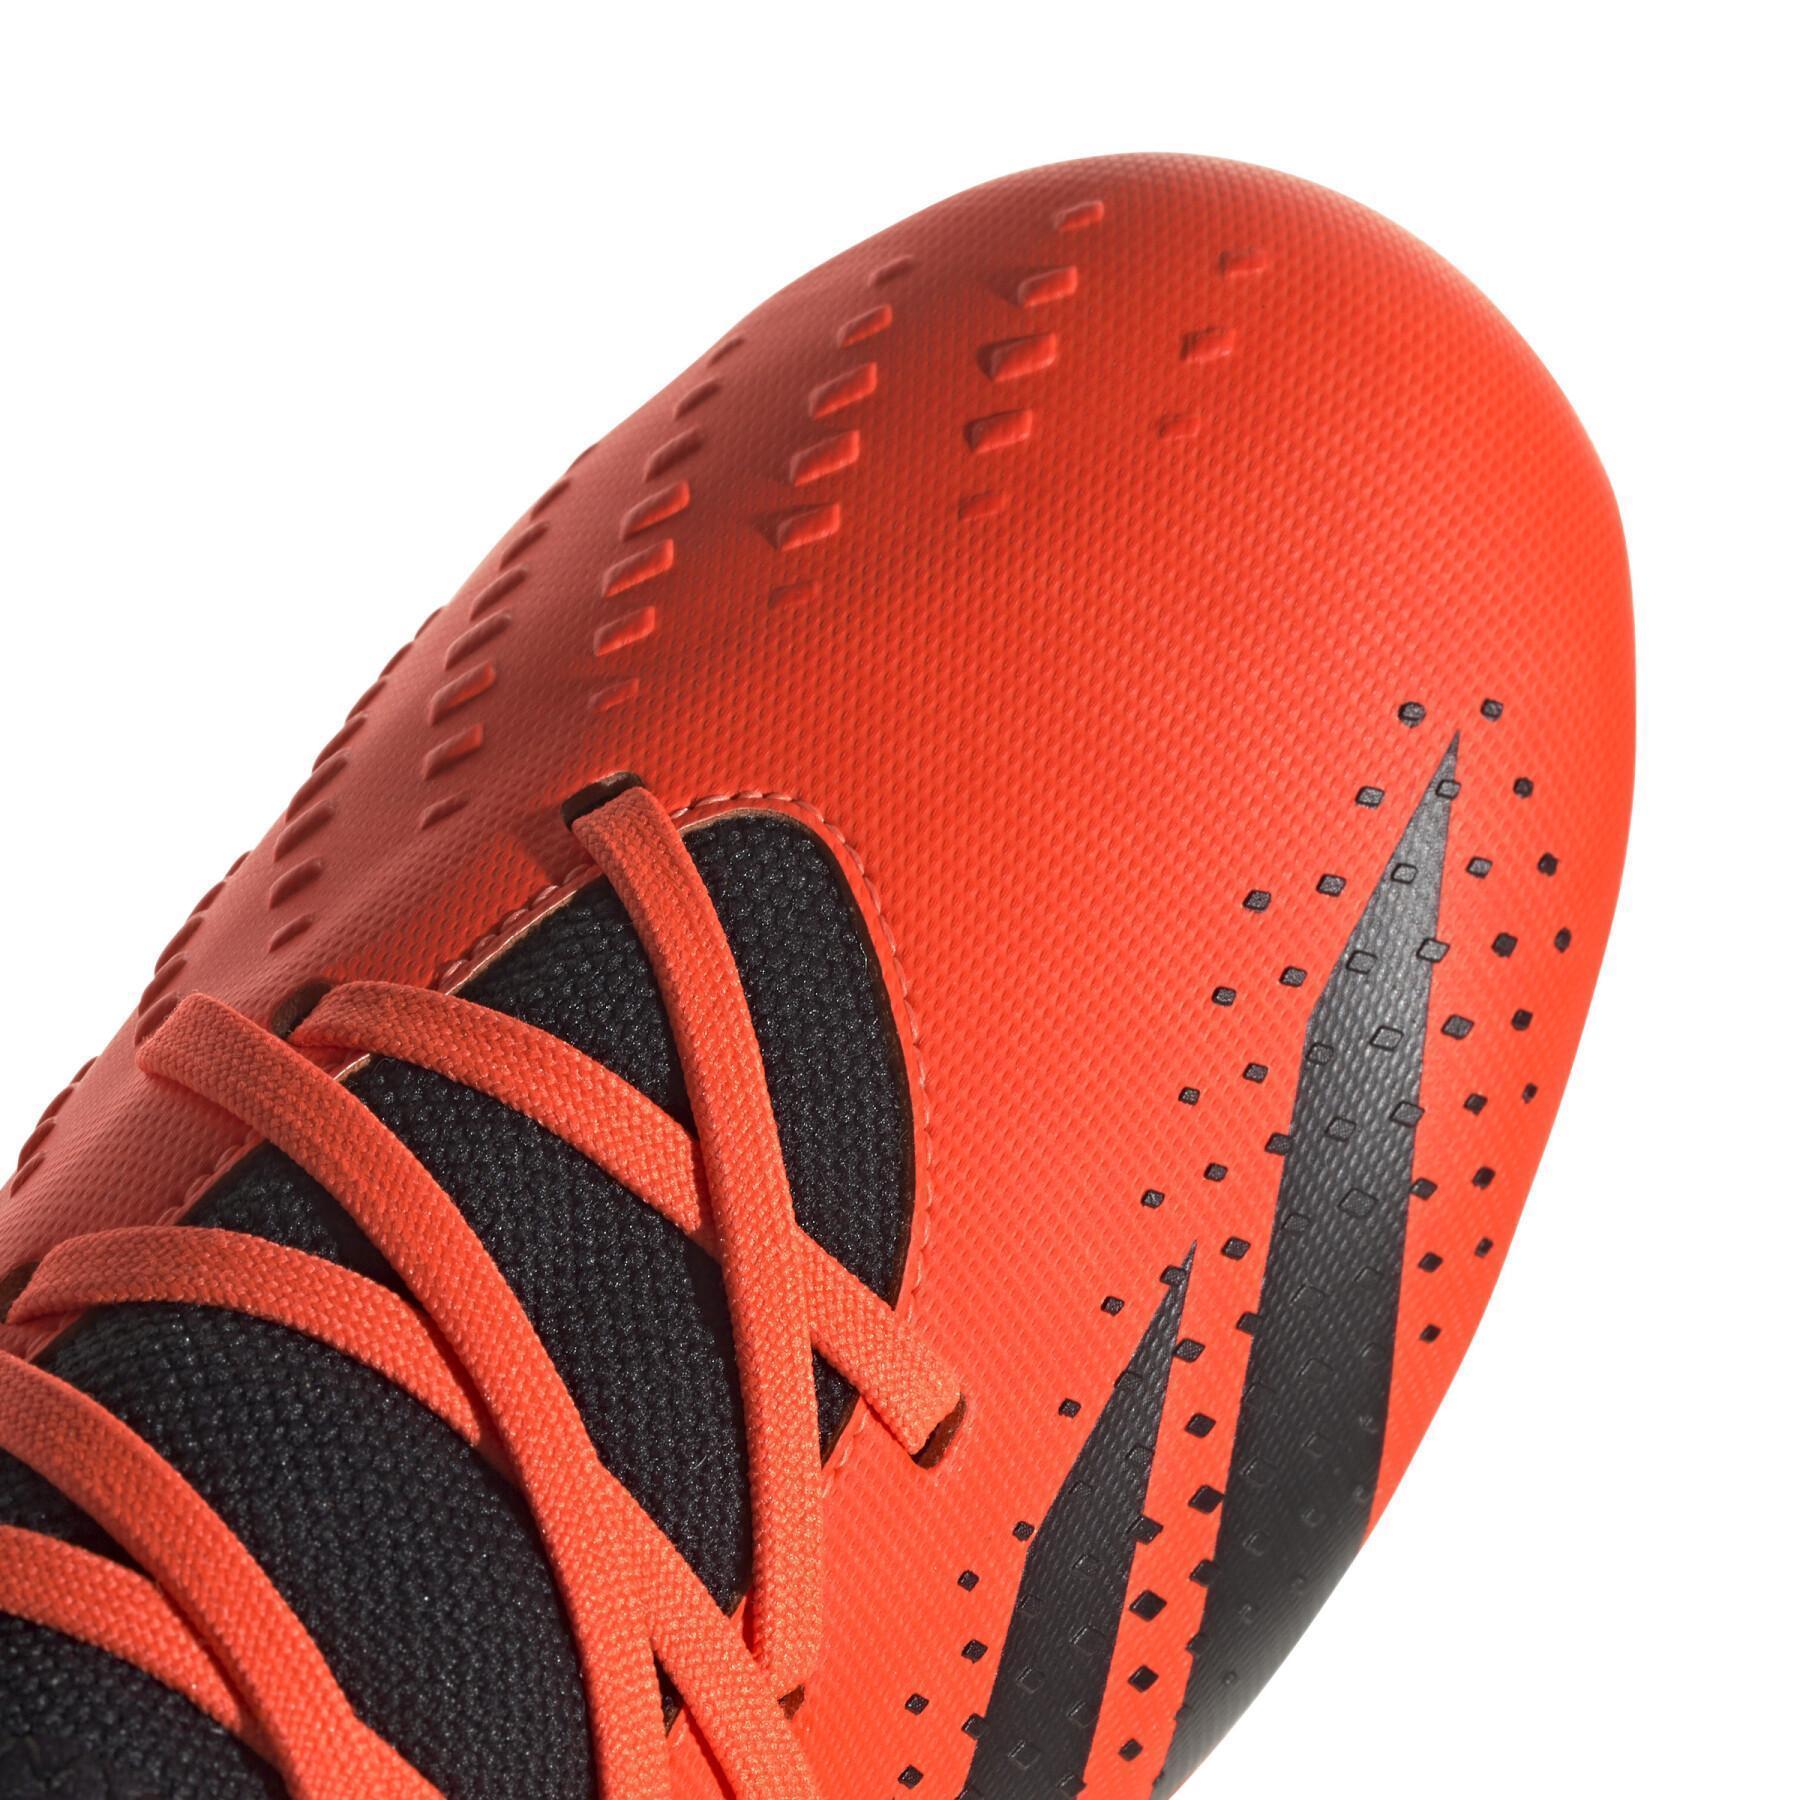 Sapatos de futebol para crianças adidas Predator Accuracy.3 FG Heatspawn Pack